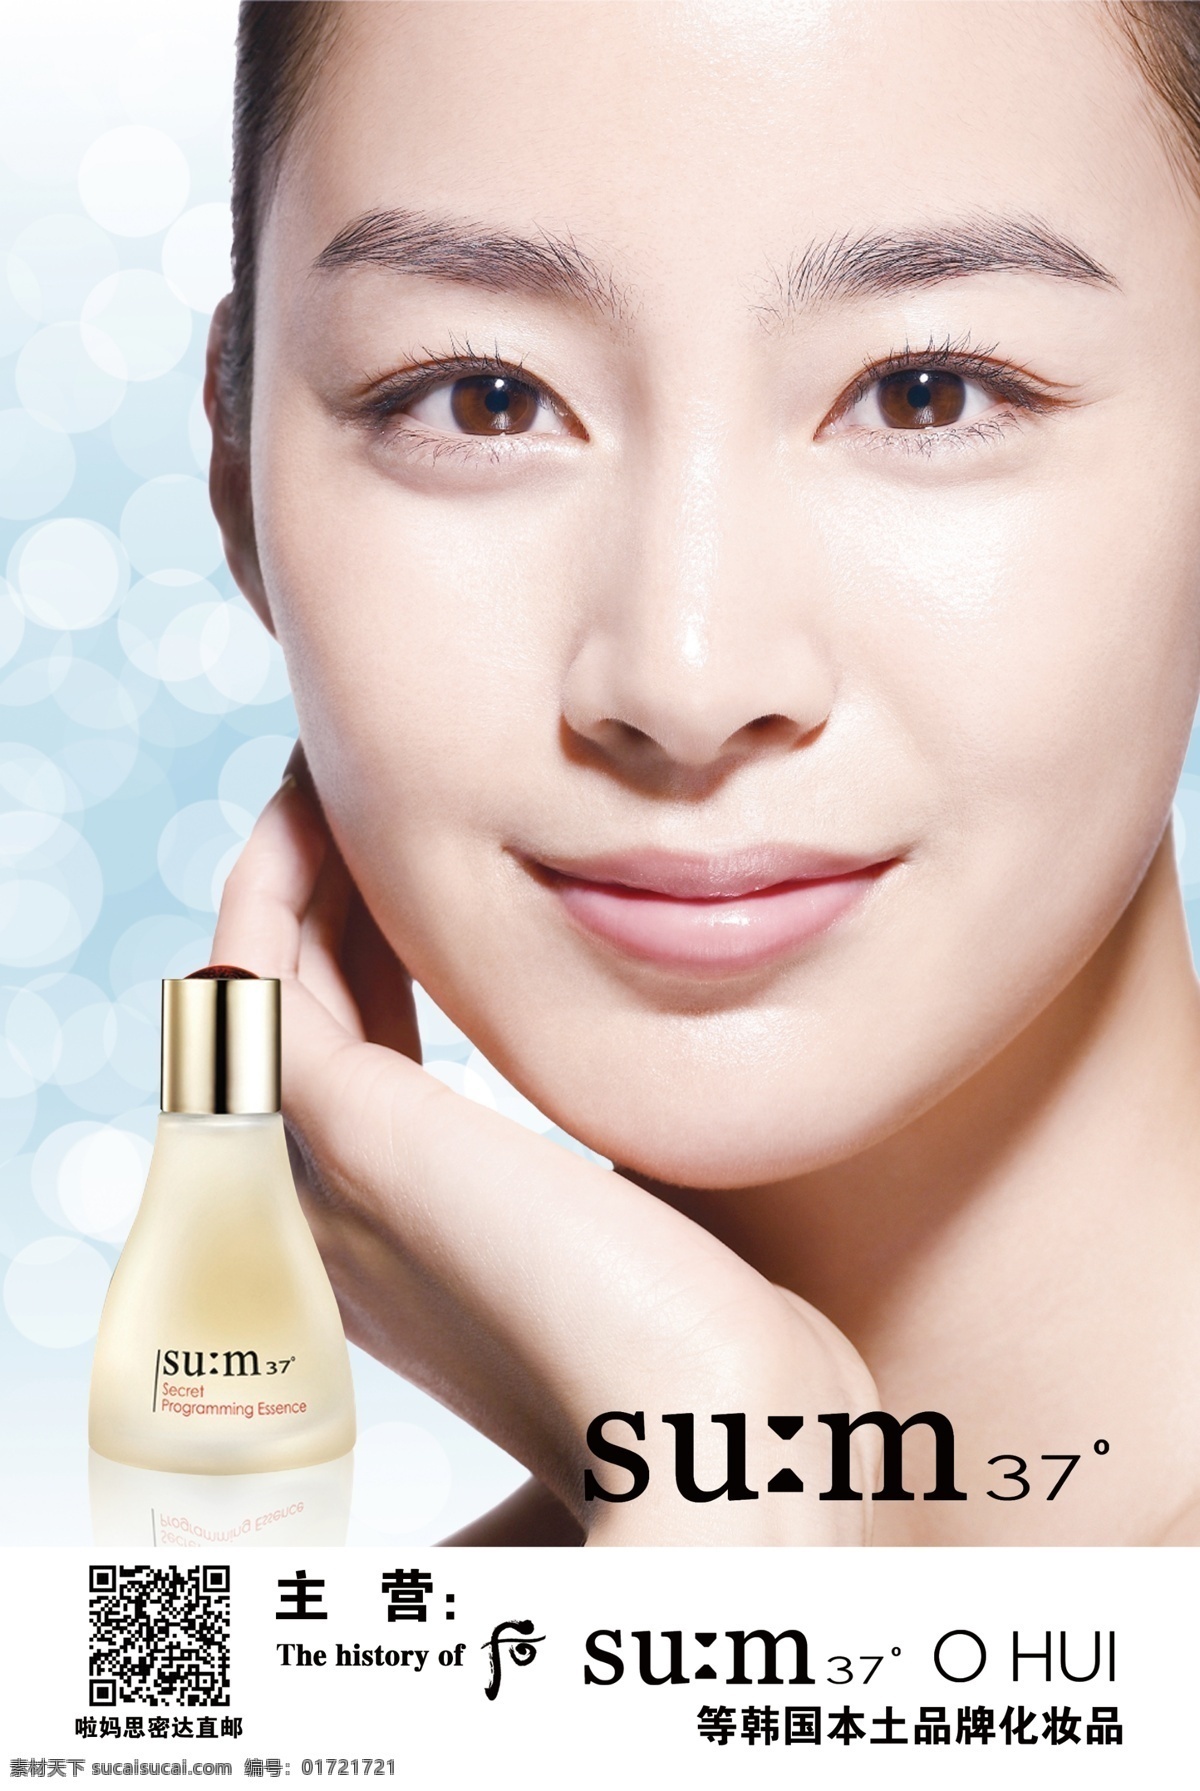 化妆品海报 37 呼吸 韩国 化妆品 金泰熙